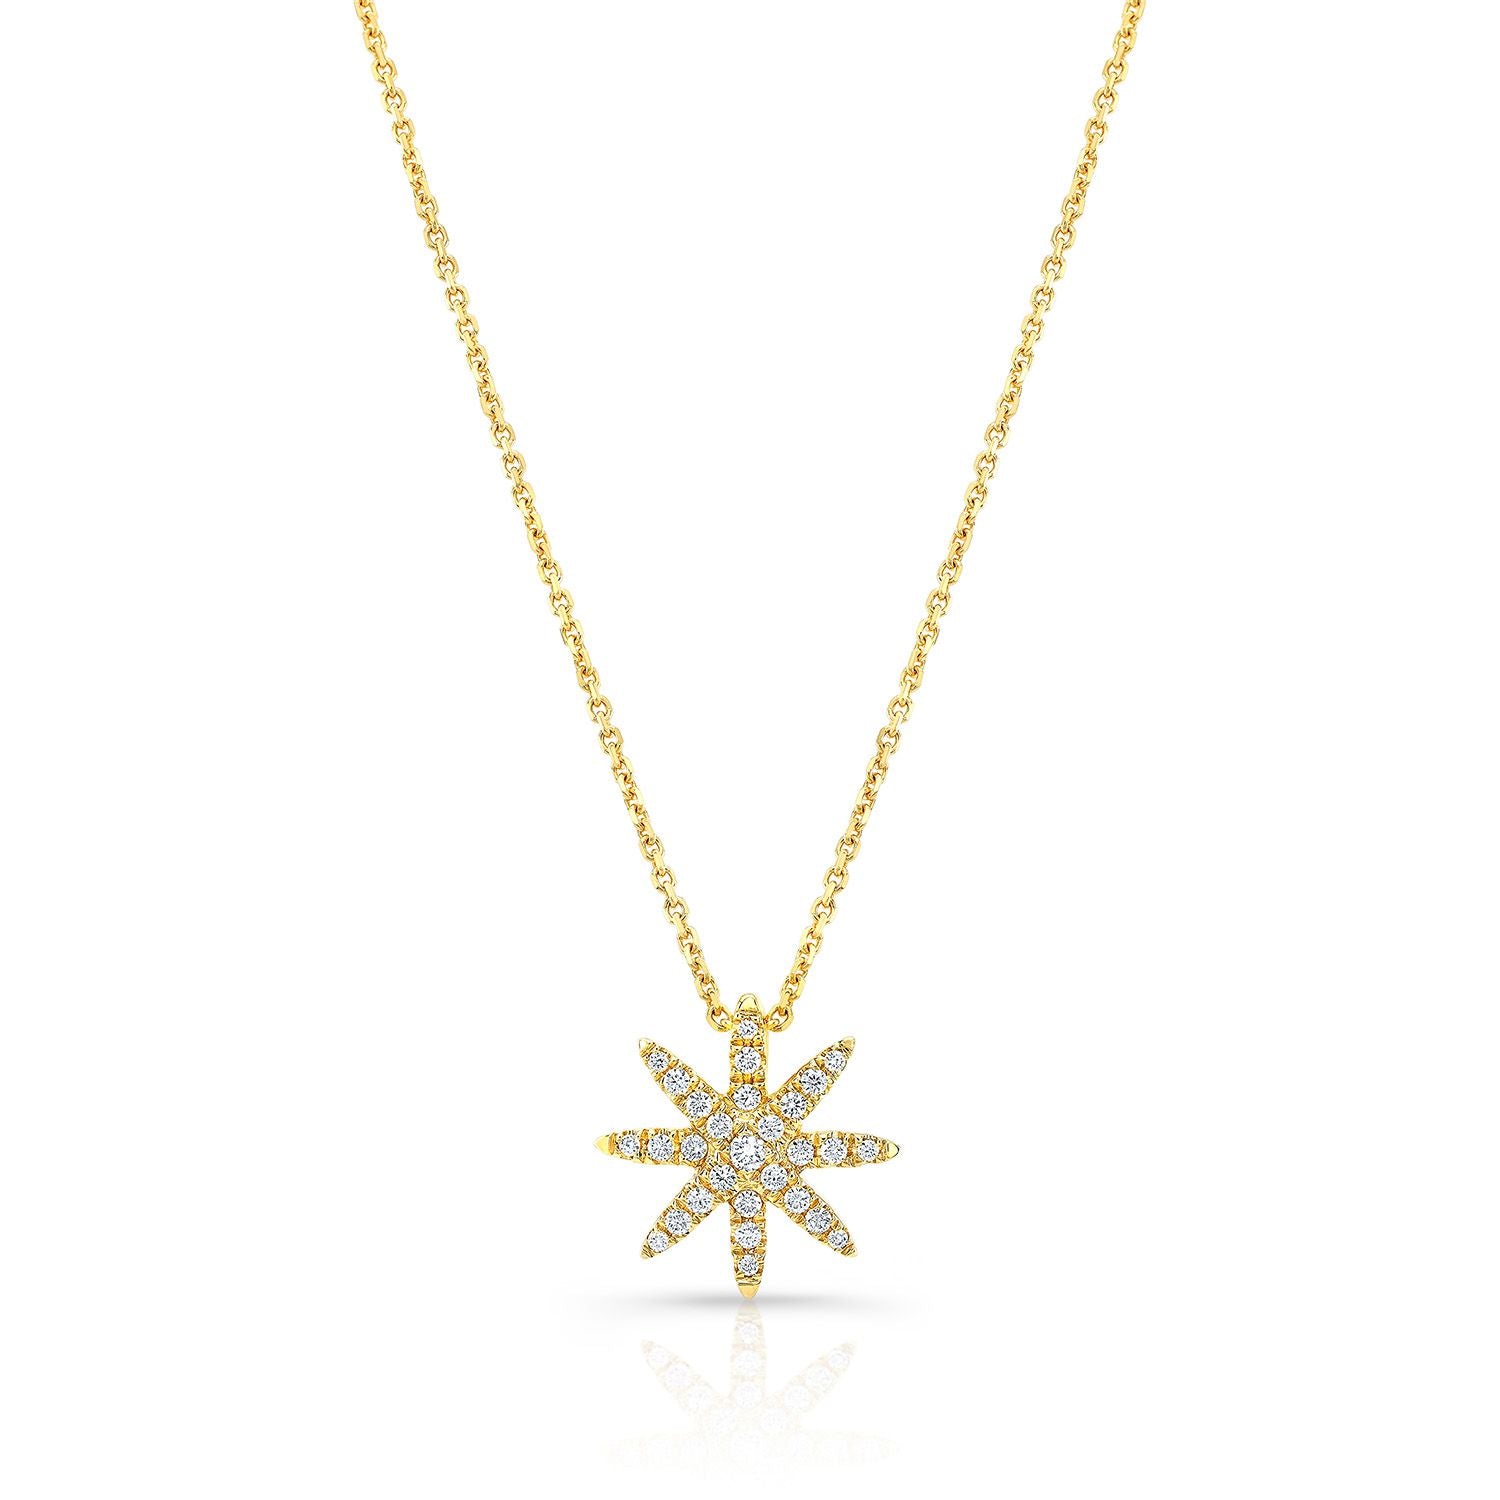 Six Pointed Star Necklace with Star Set Diamond – Jane Diaz NY